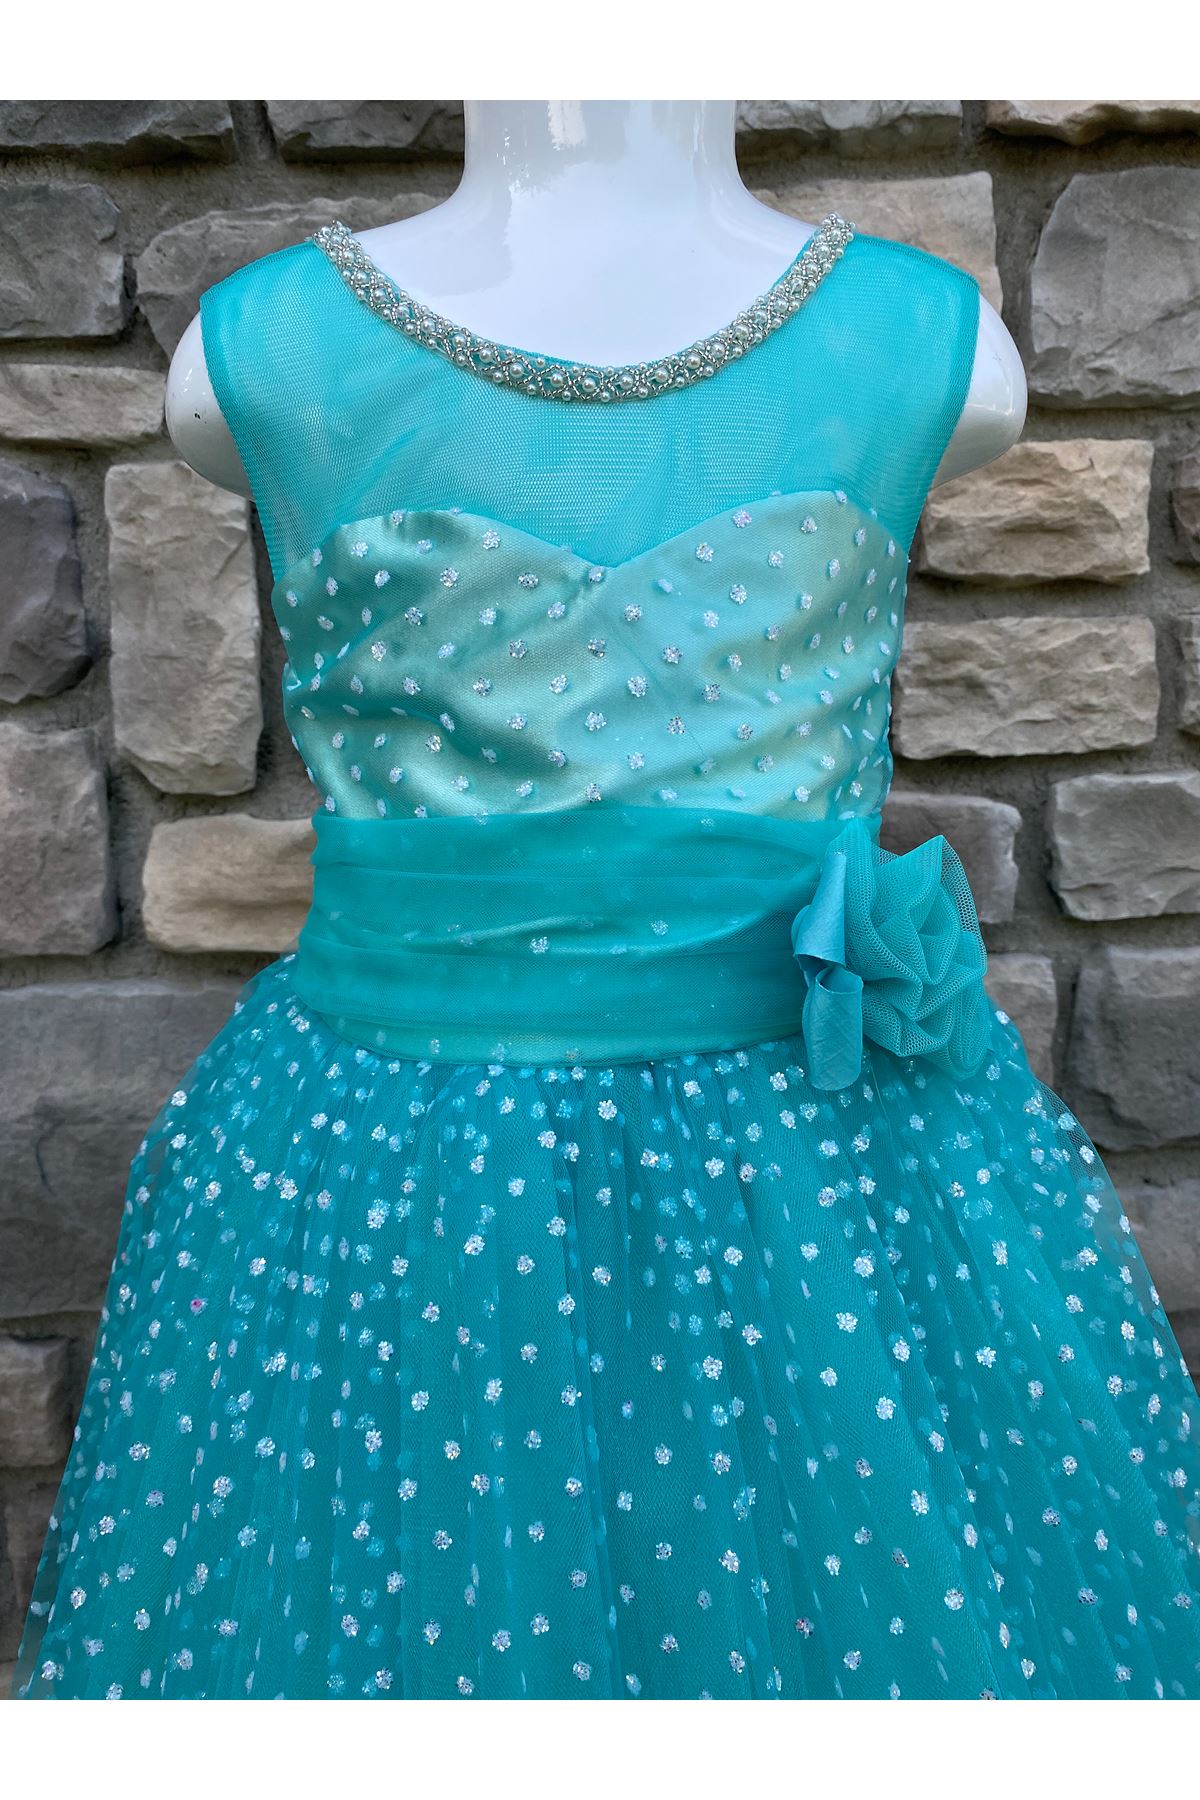 Simli Tül Yaka Detaylı Kız Çocuk Elbise 10001 Su Yeşili